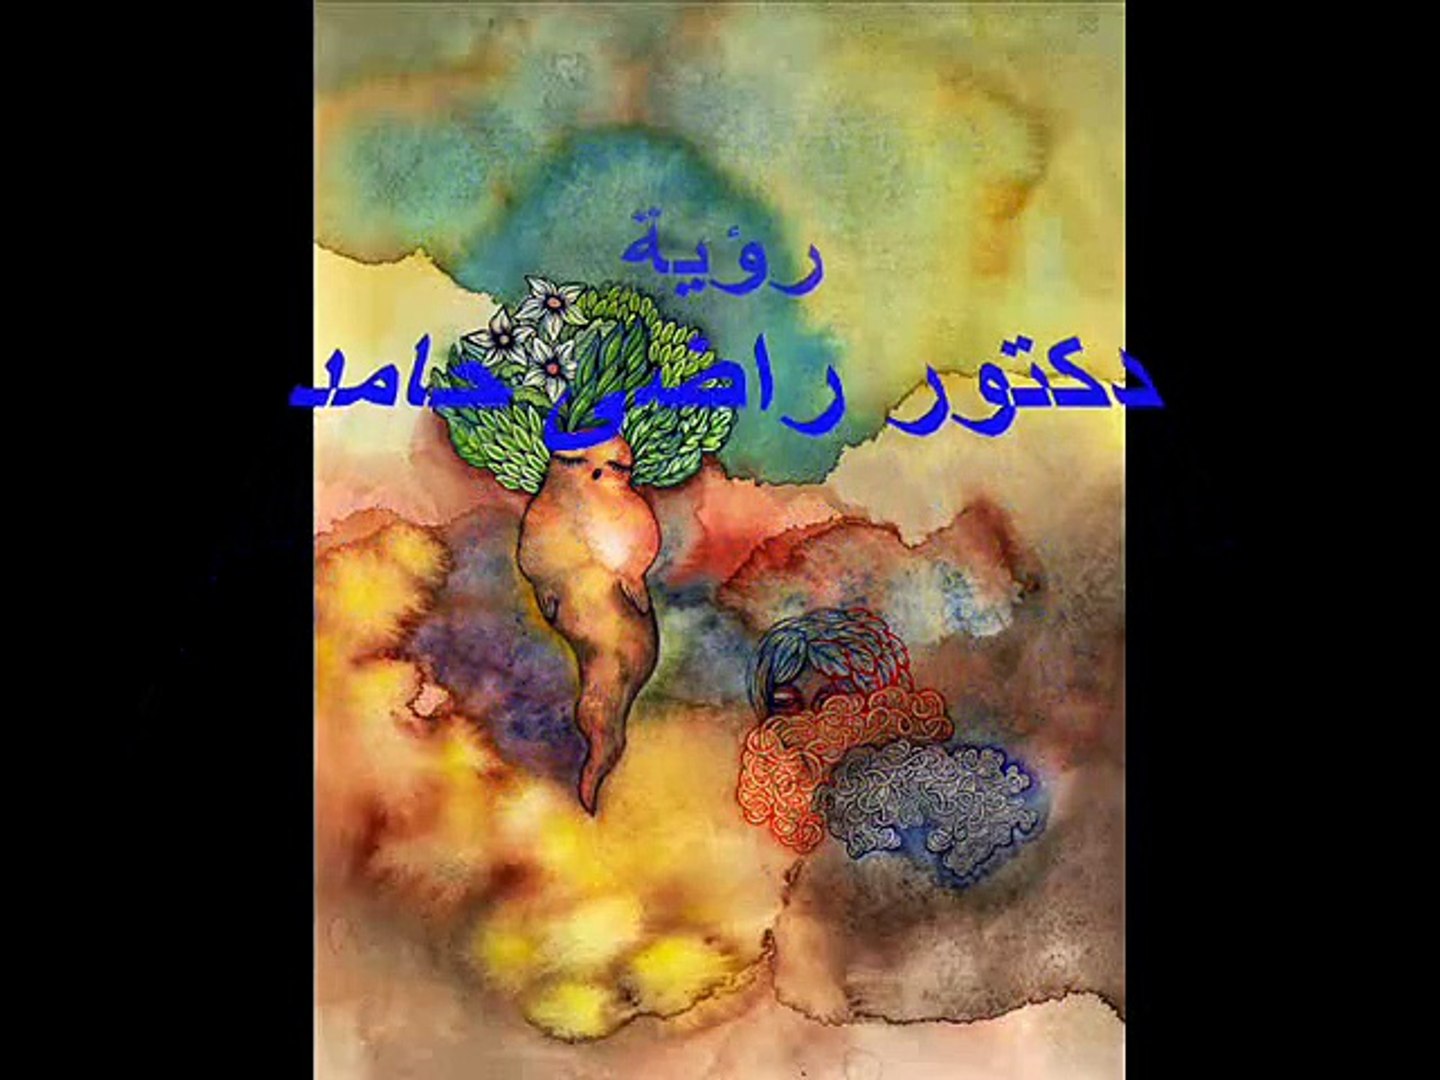 مدام تحب بتنكر ليه - ريهام عبدالحكيم - video Dailymotion